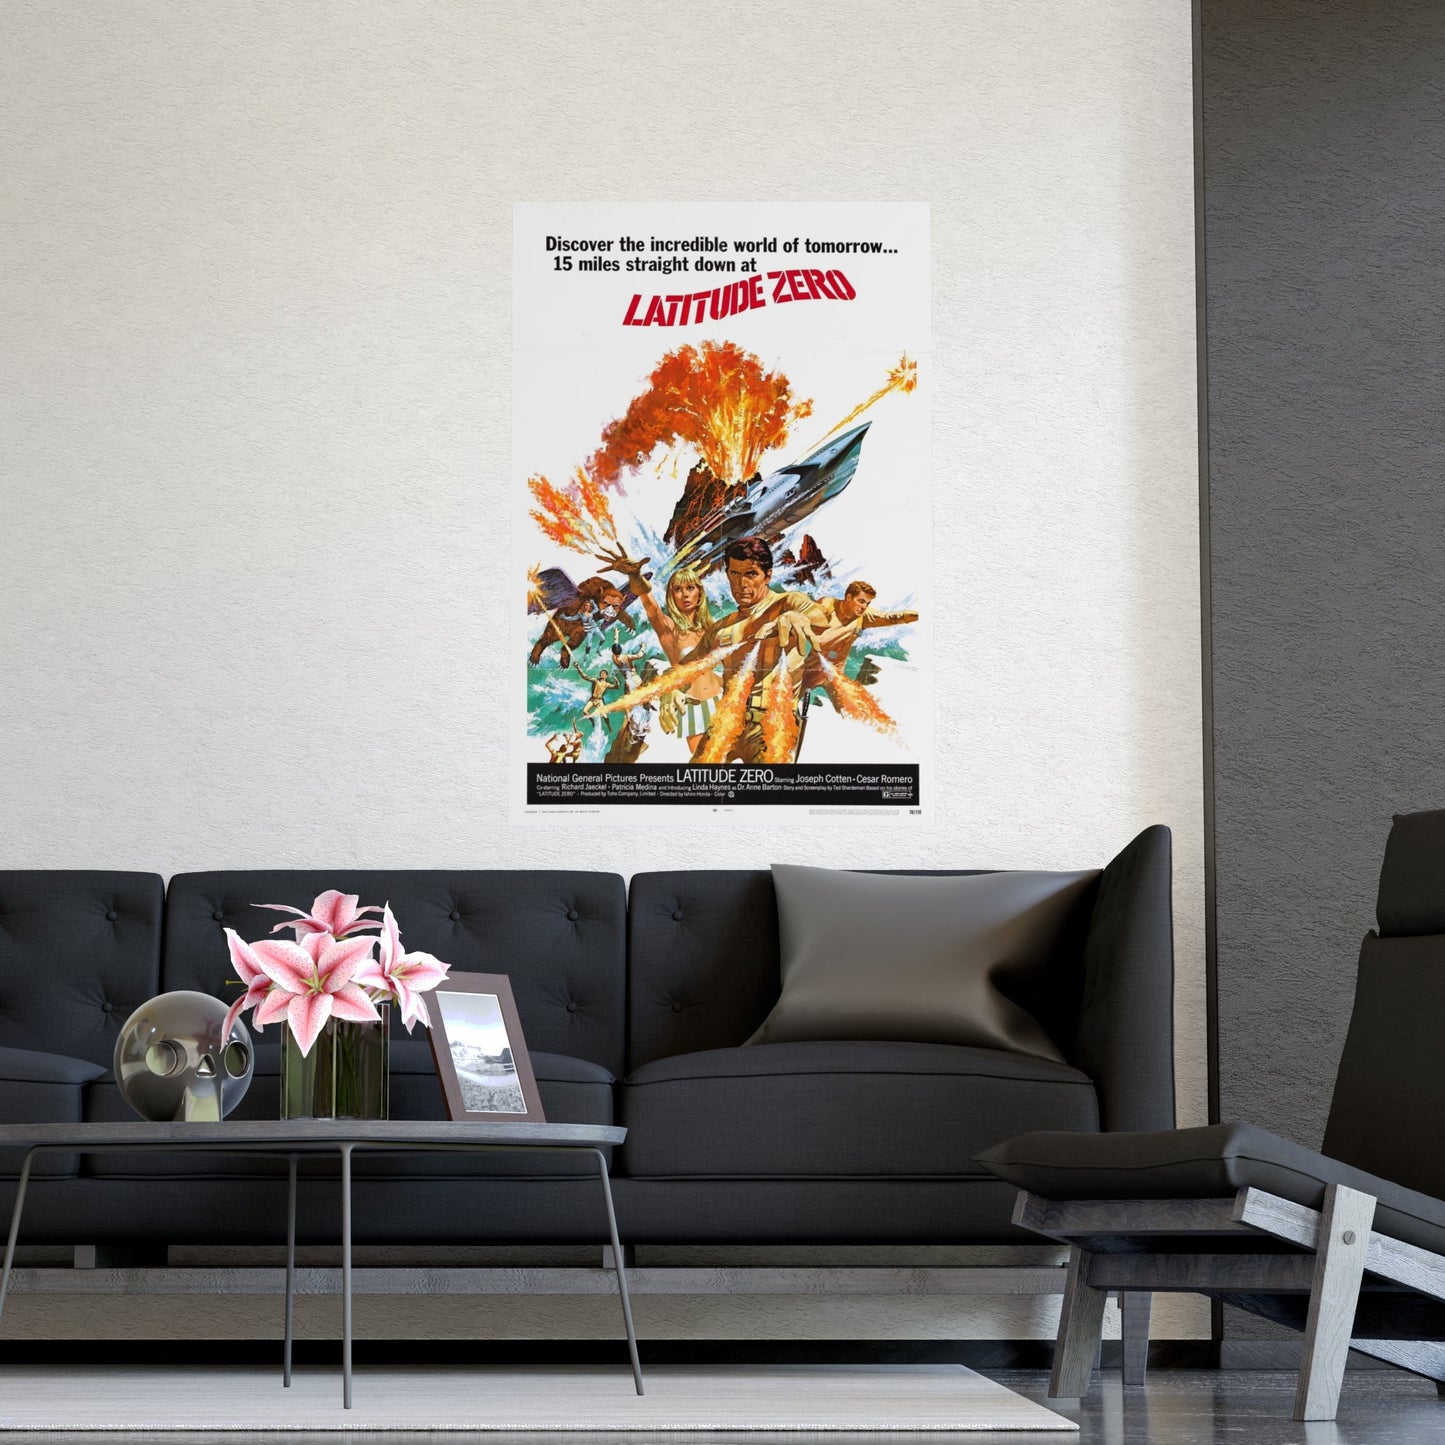 LATITUDE ZERO (2) 1969 - Paper Movie Poster-The Sticker Space